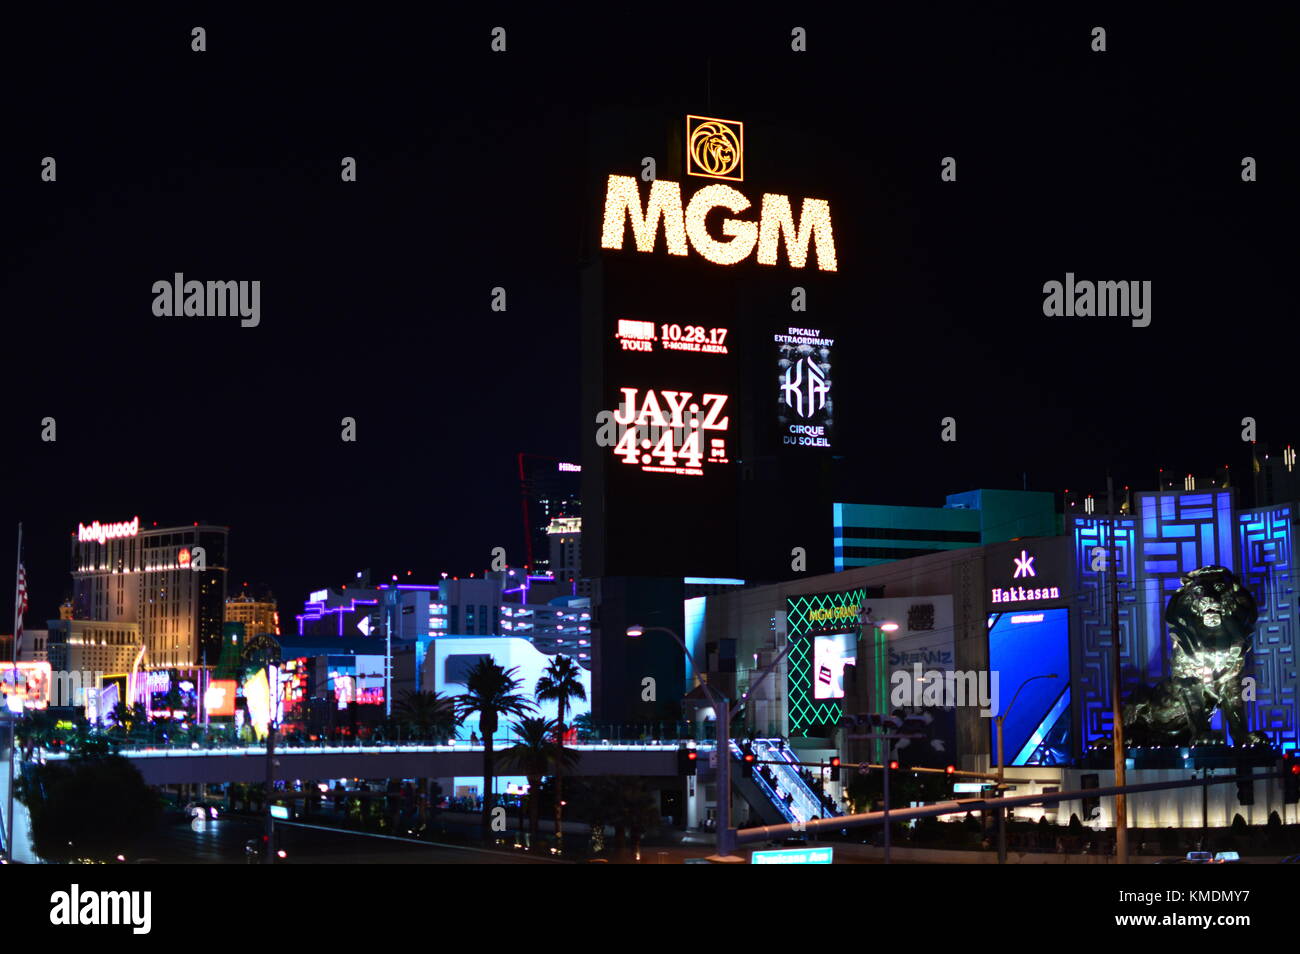 New York New York hotel casino, con falsos estatua de la libertad. Gran casino en el famoso Strip de Las Vegas, Nevada, Estados Unidos de América. Foto de stock